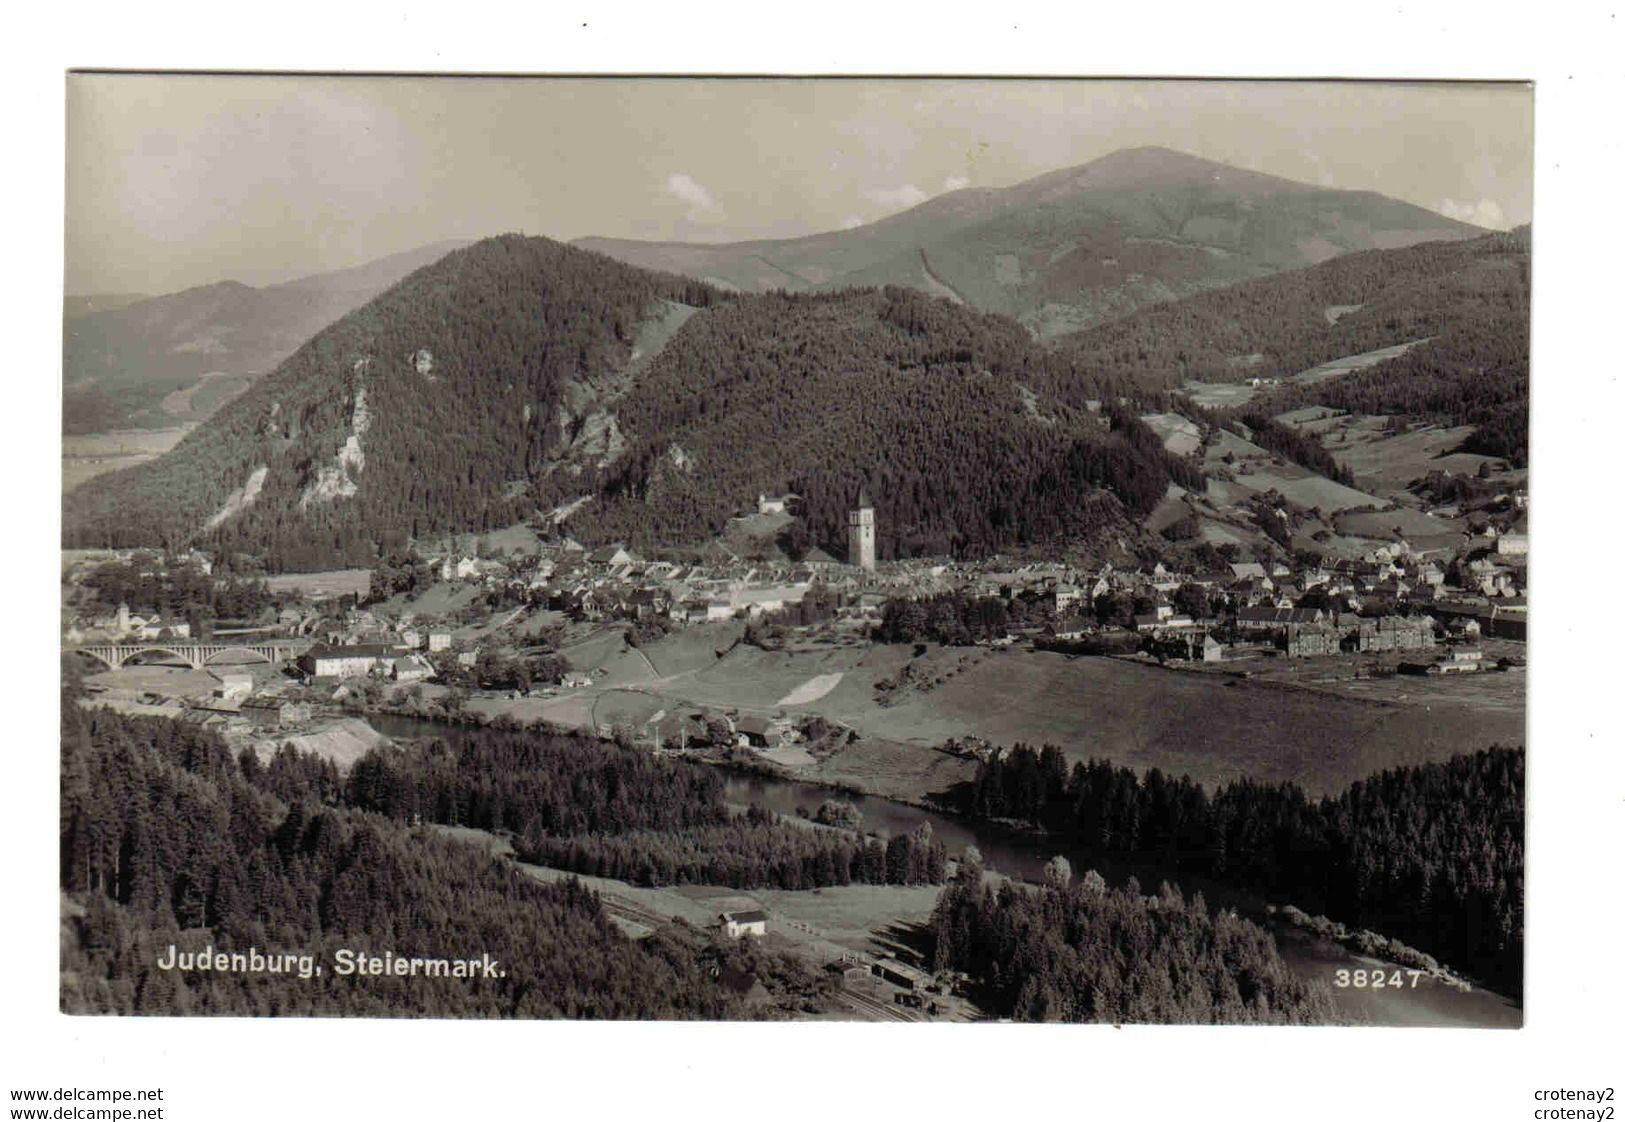 Autriche Styrie JUDENBURG Steiermark N°38247 P. Ledermann Wien VOIR DOS - Judenburg